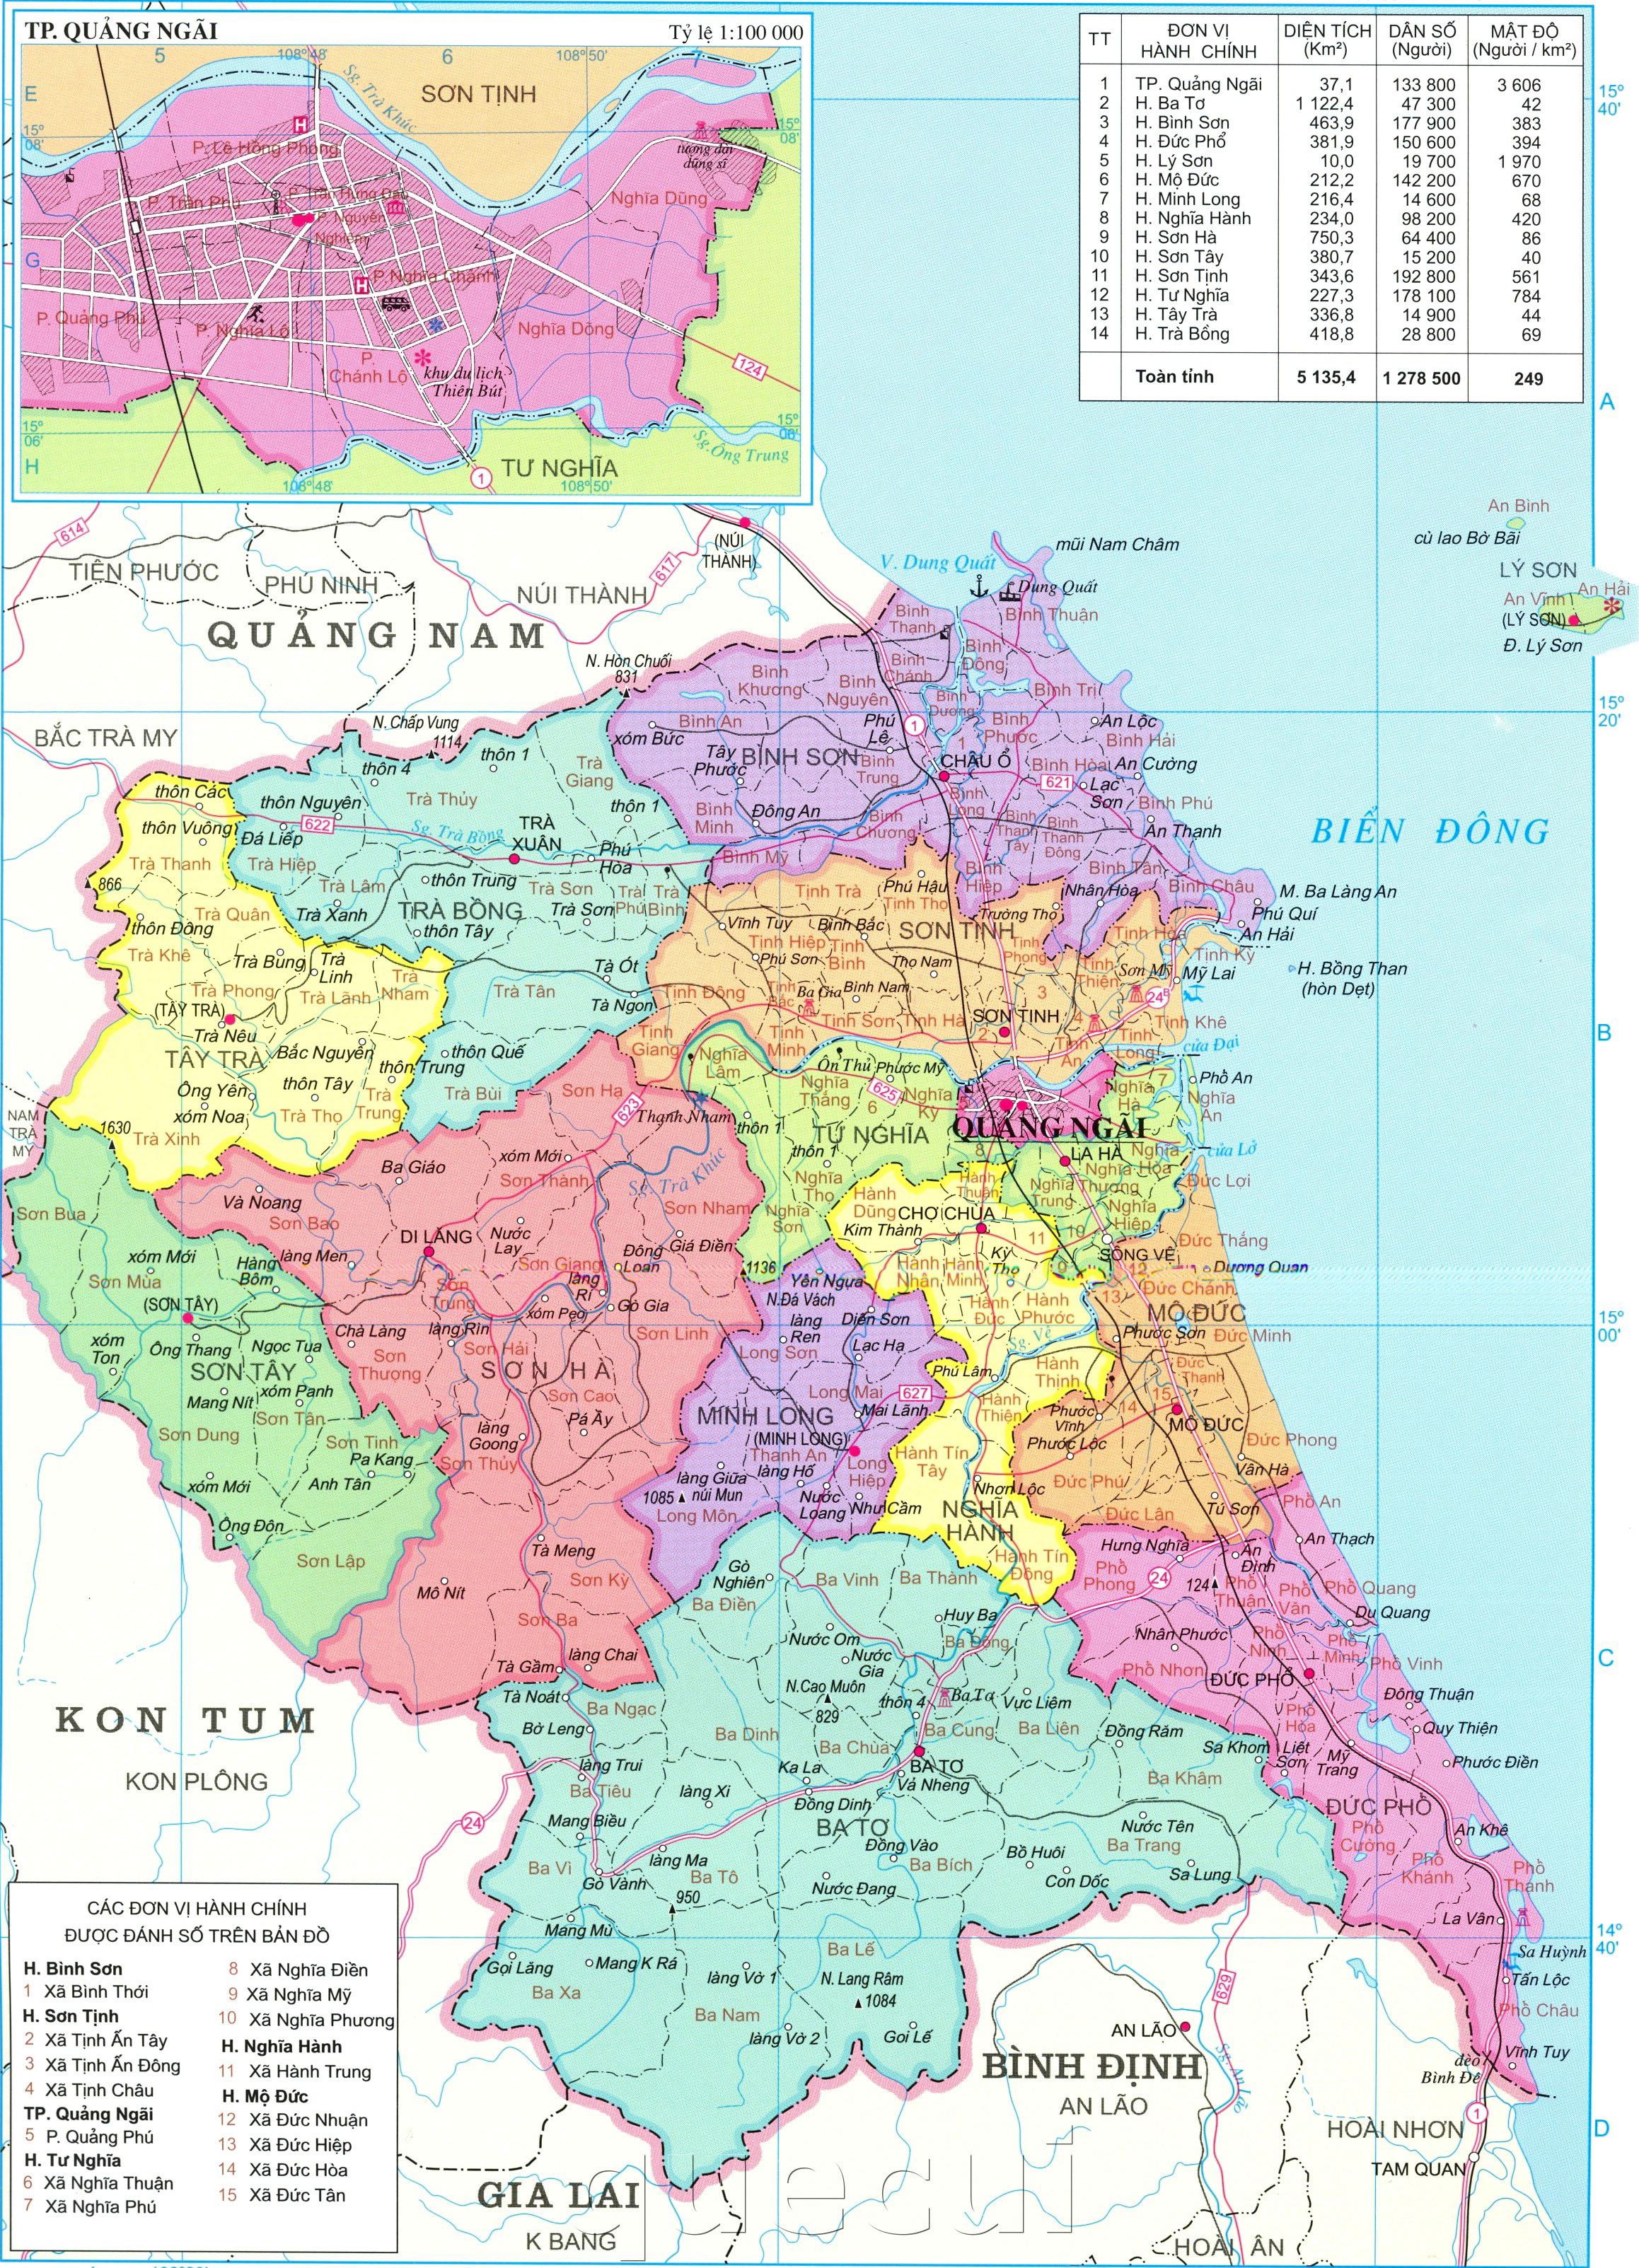 Bản đồ Quảng Ngãi: Khám phá Quảng Ngãi bằng bản đồ chi tiết và tìm hiểu về vẻ đẹp hoang sơ của vùng đất này.